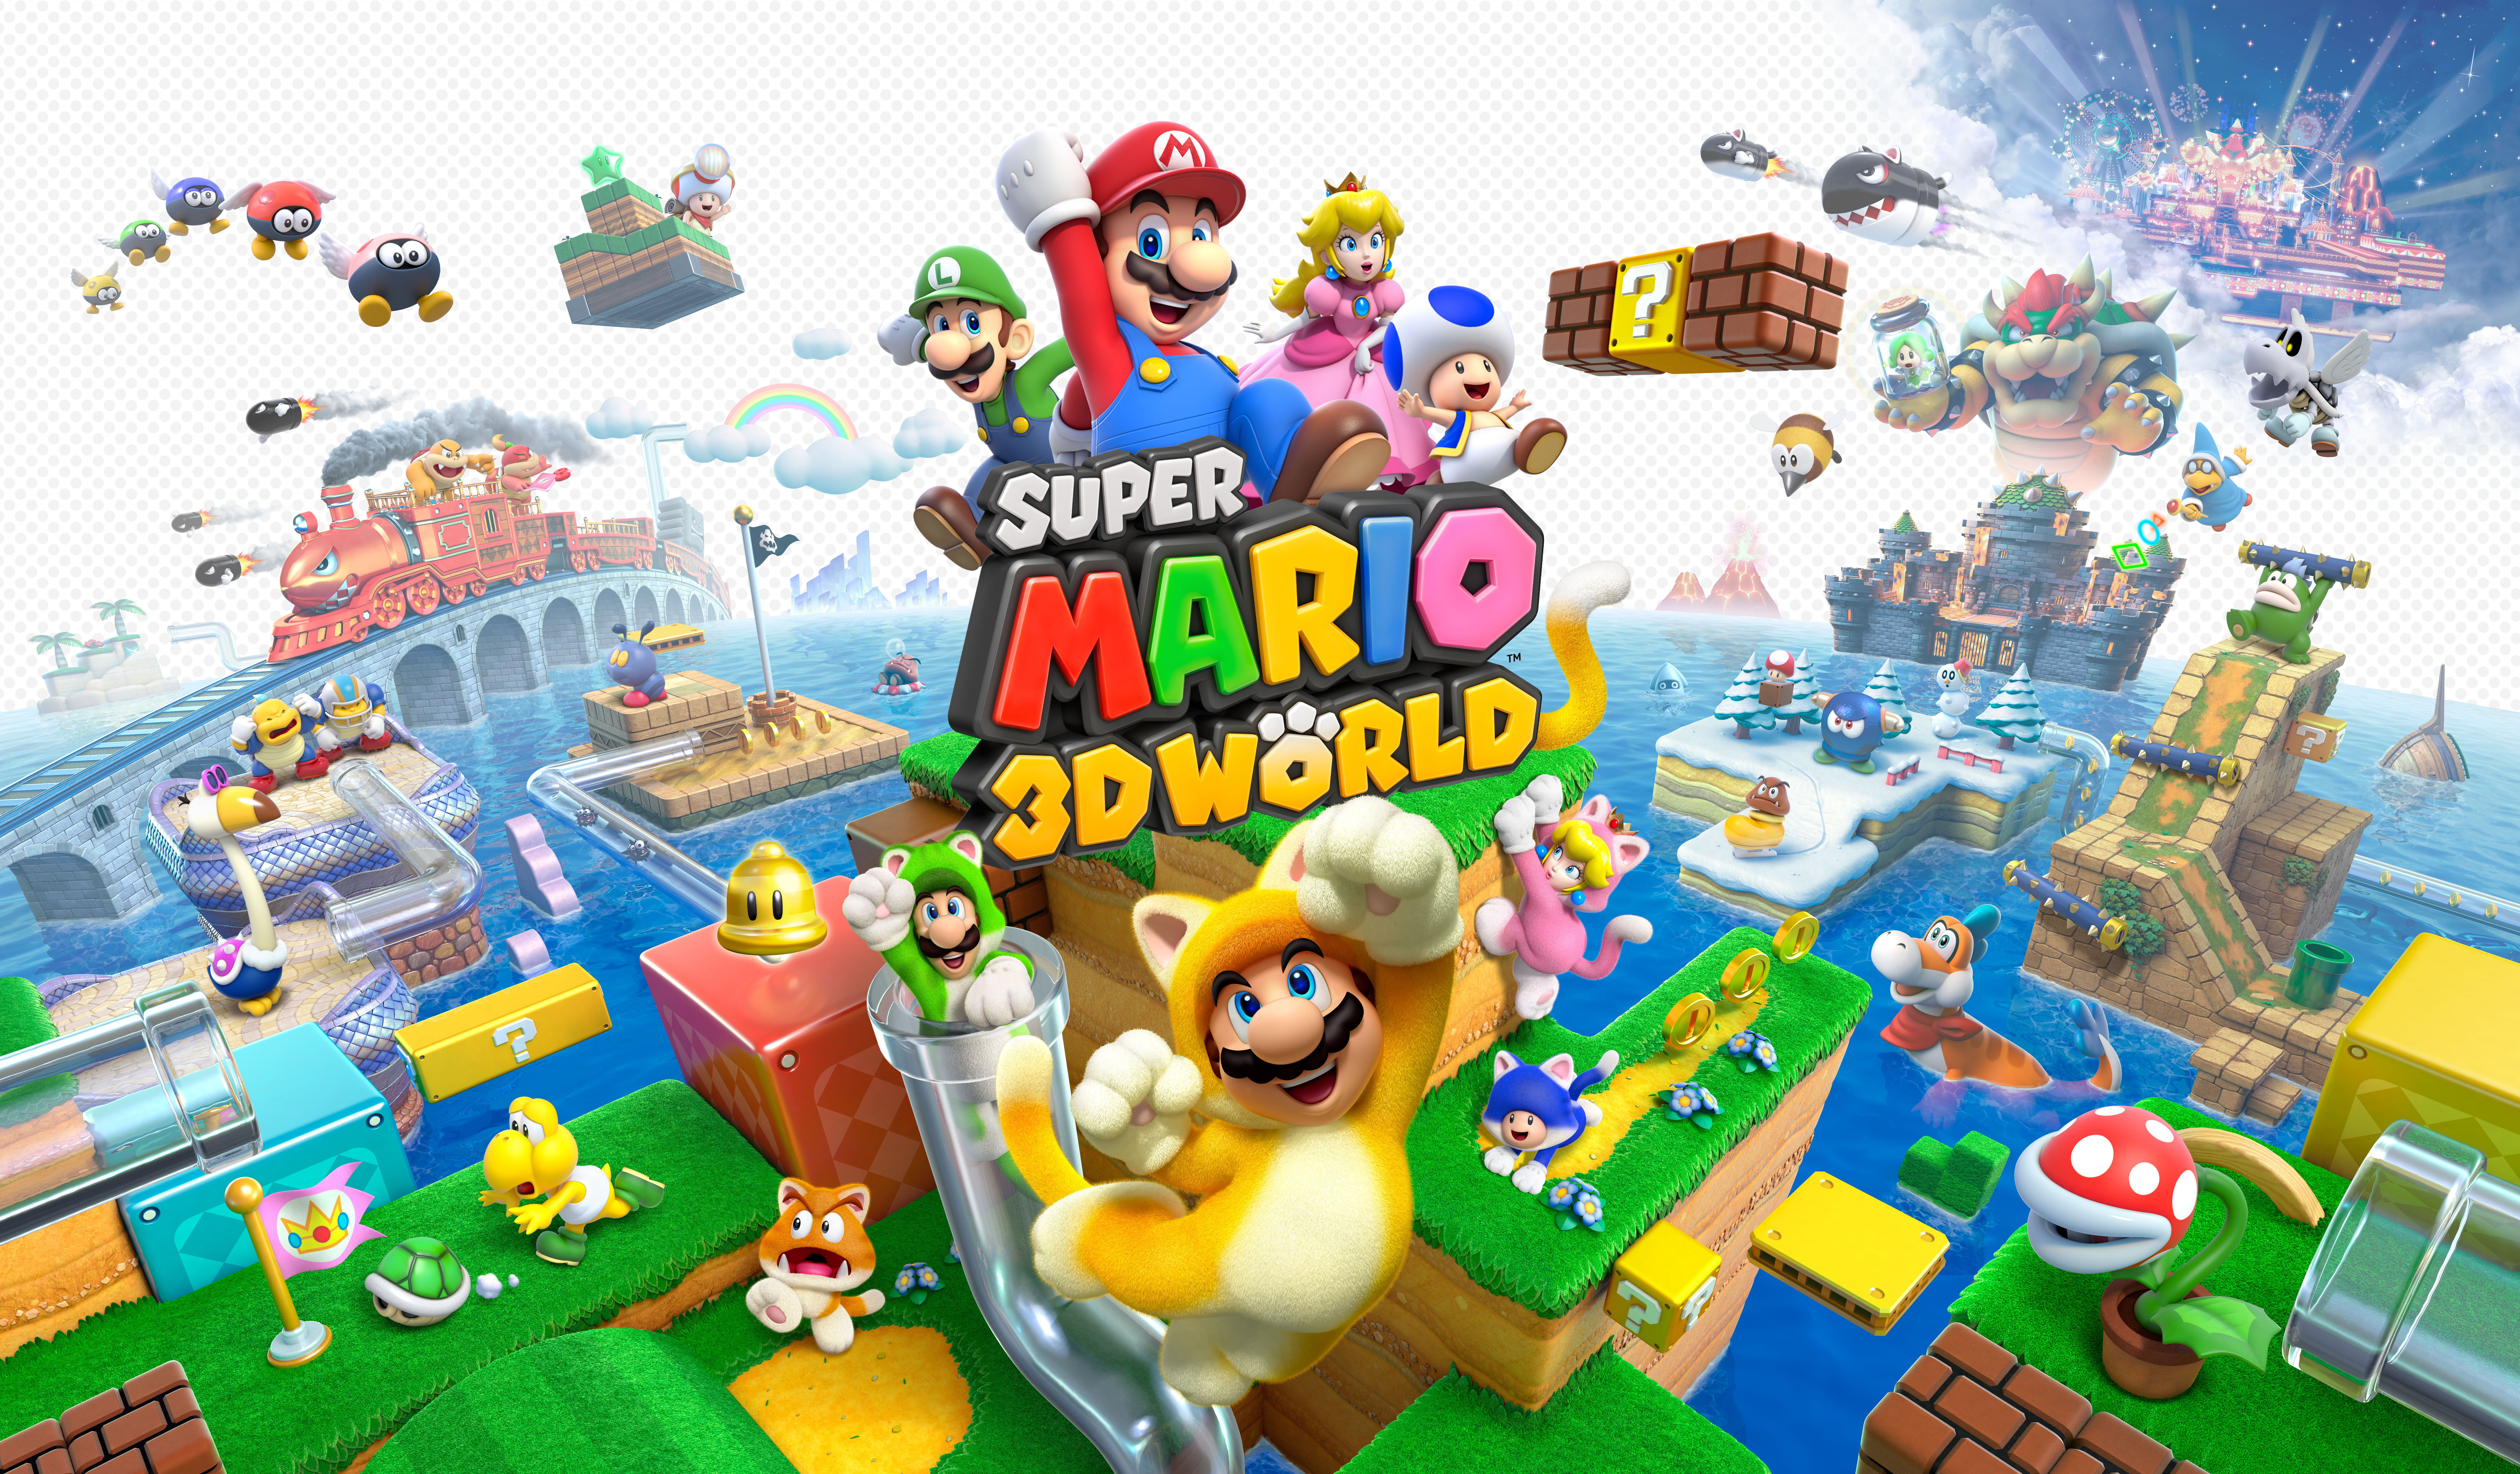 Alternatief nabootsen ijs Games/Apps: Wii U Mario 3D World bundle $250, NBA 2K16 $50, Dishonored DE  $26, freebies, more